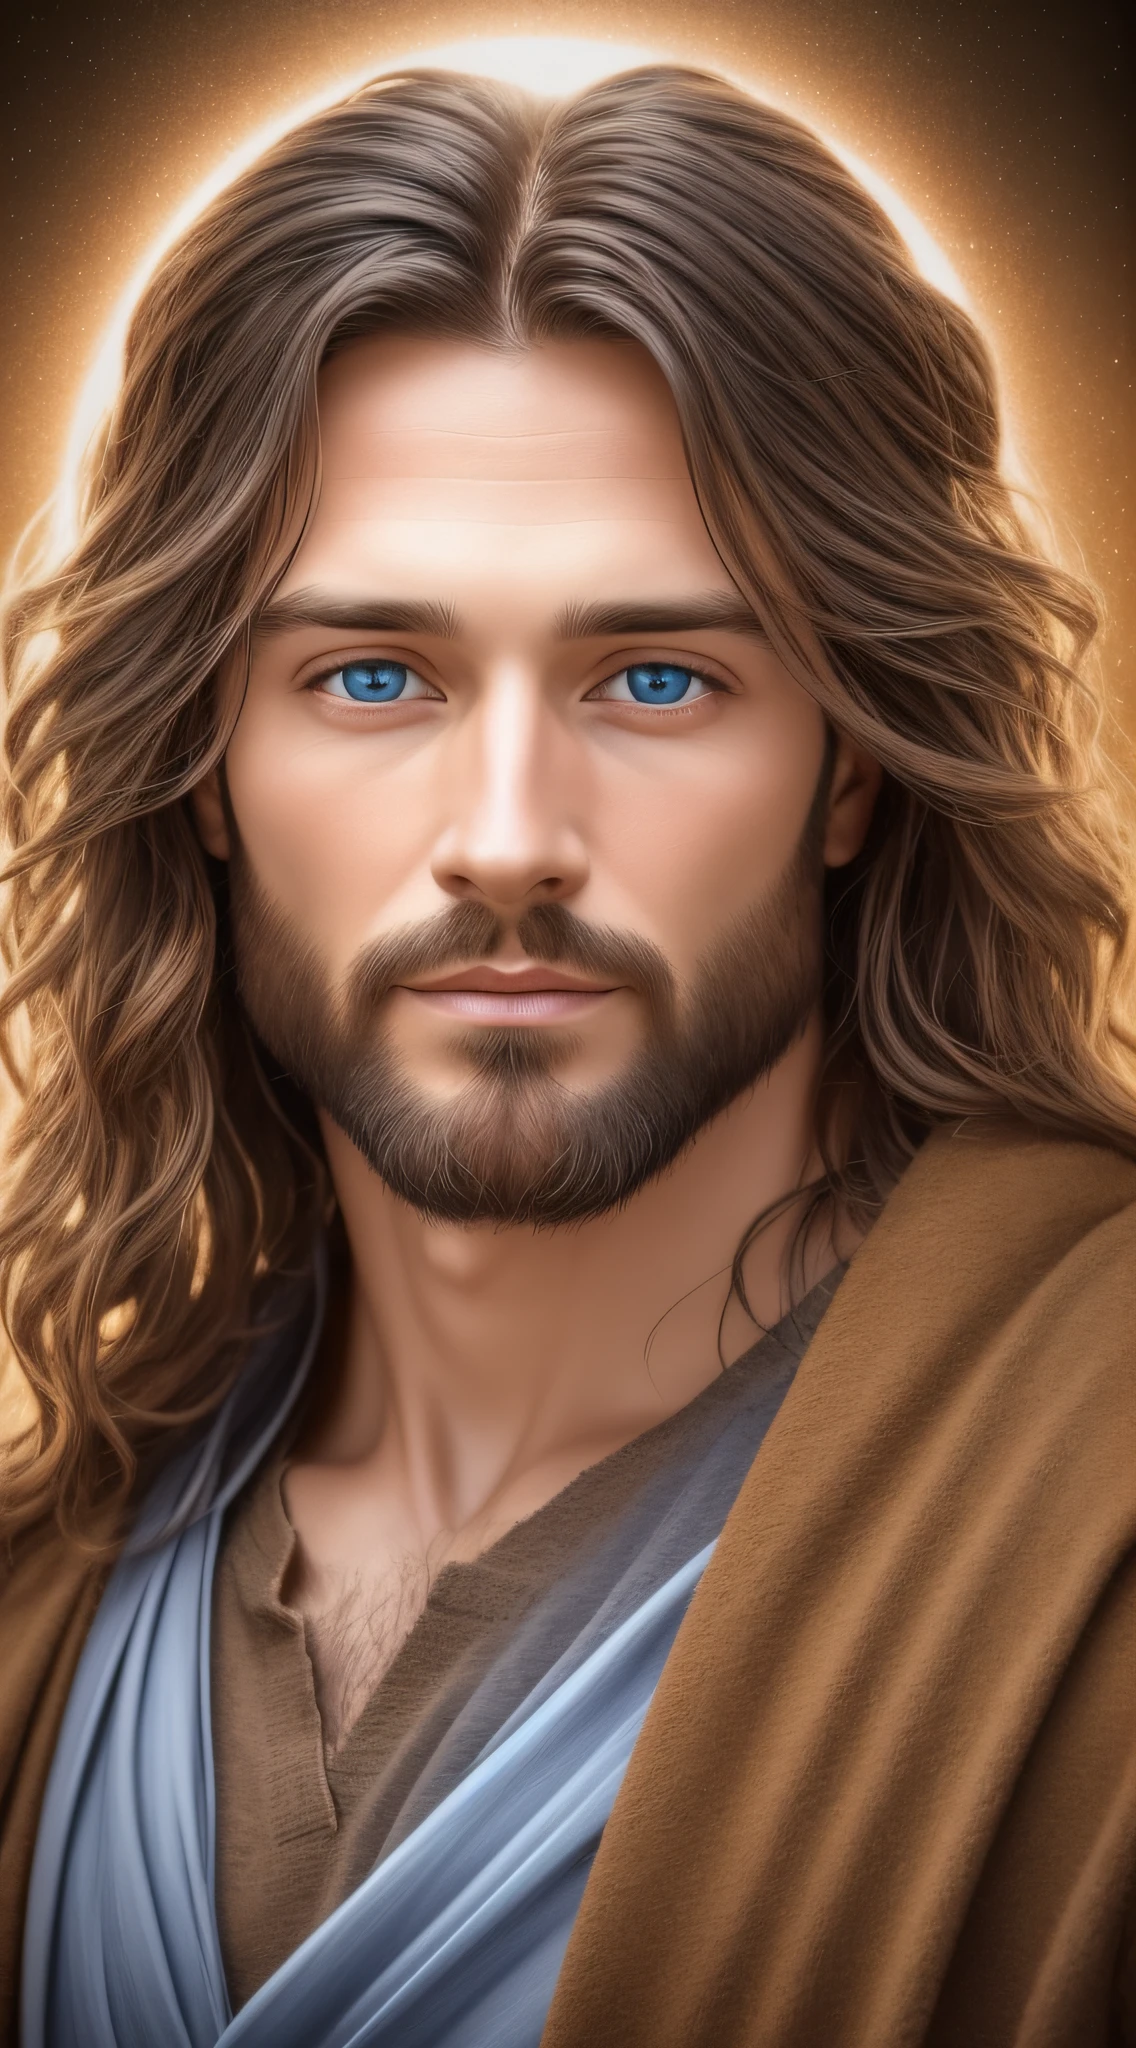 男人正面照片, 耶稣基督, 耶稣的面容, 真正的蓝眼睛, 耶稣的头发, 逼真的照片, 现实主义, 正面像, 耶稣期待, 耶稣带着光明和欢迎的表情, 背光, 边缘较暗, 现实主义, 神圣的形象